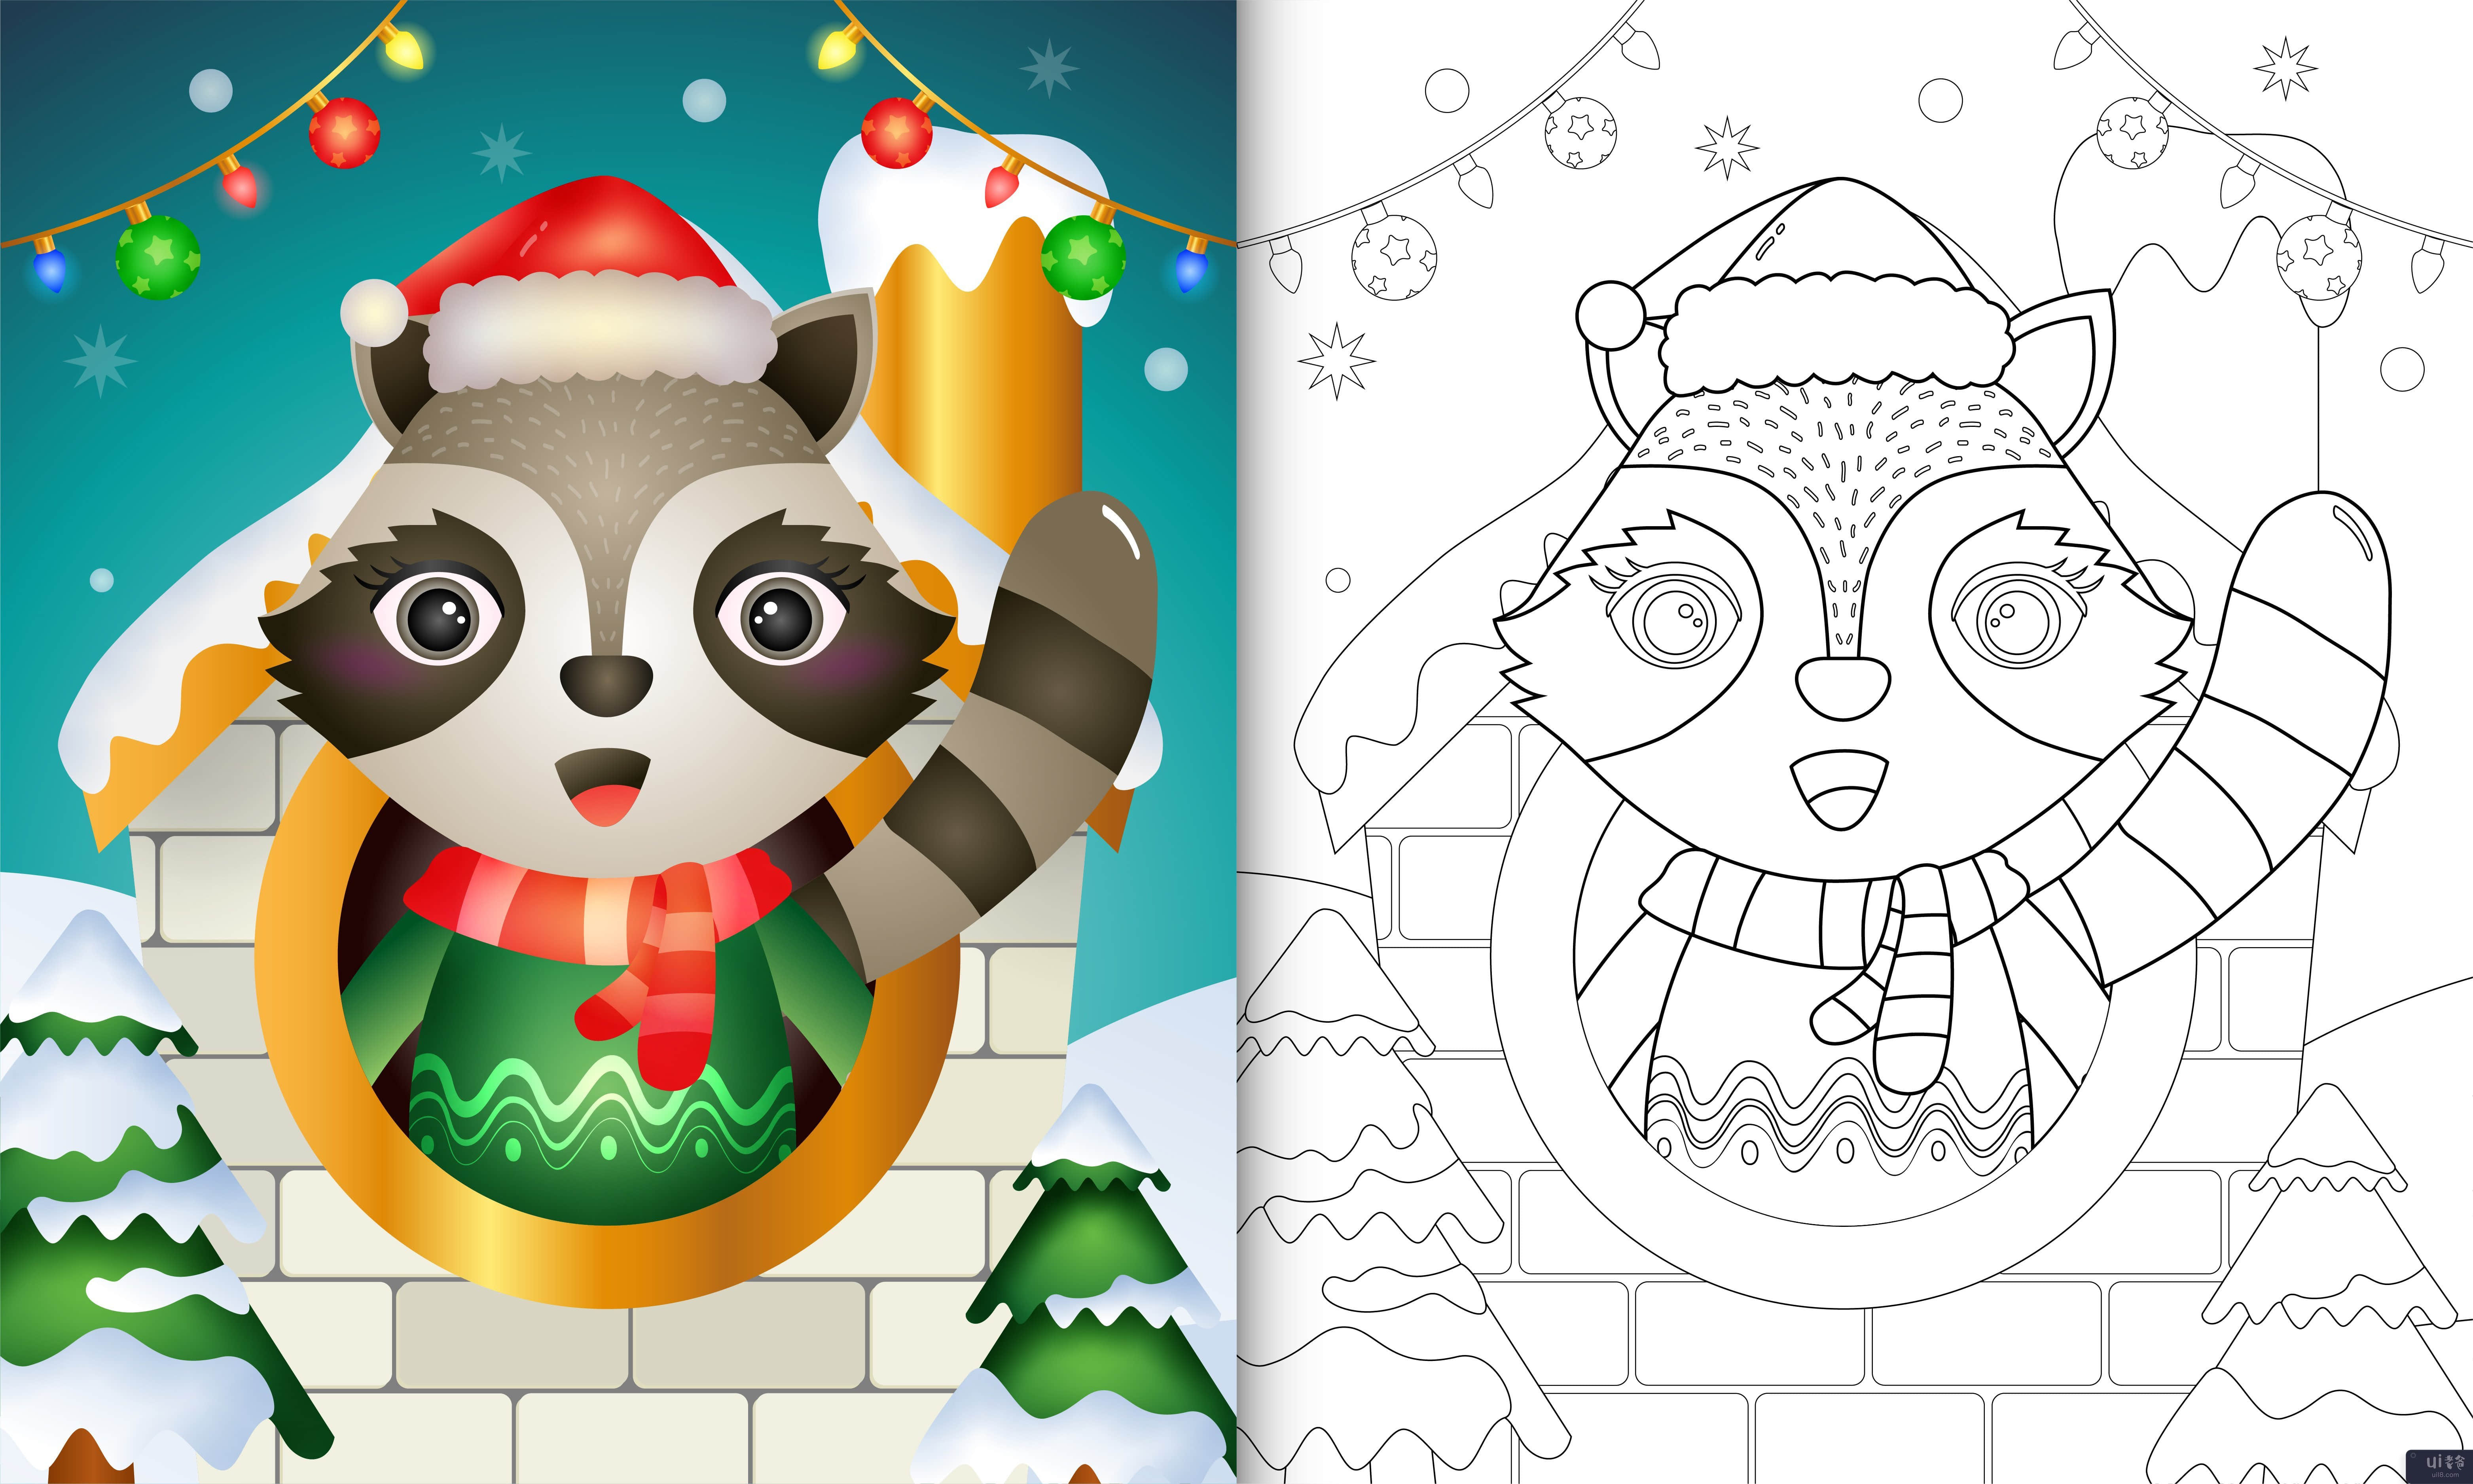 用圣诞帽和围巾为可爱的浣熊圣诞人物着色书(coloring book with a cute raccoon christmas characters using santa hat and scarf)插图2